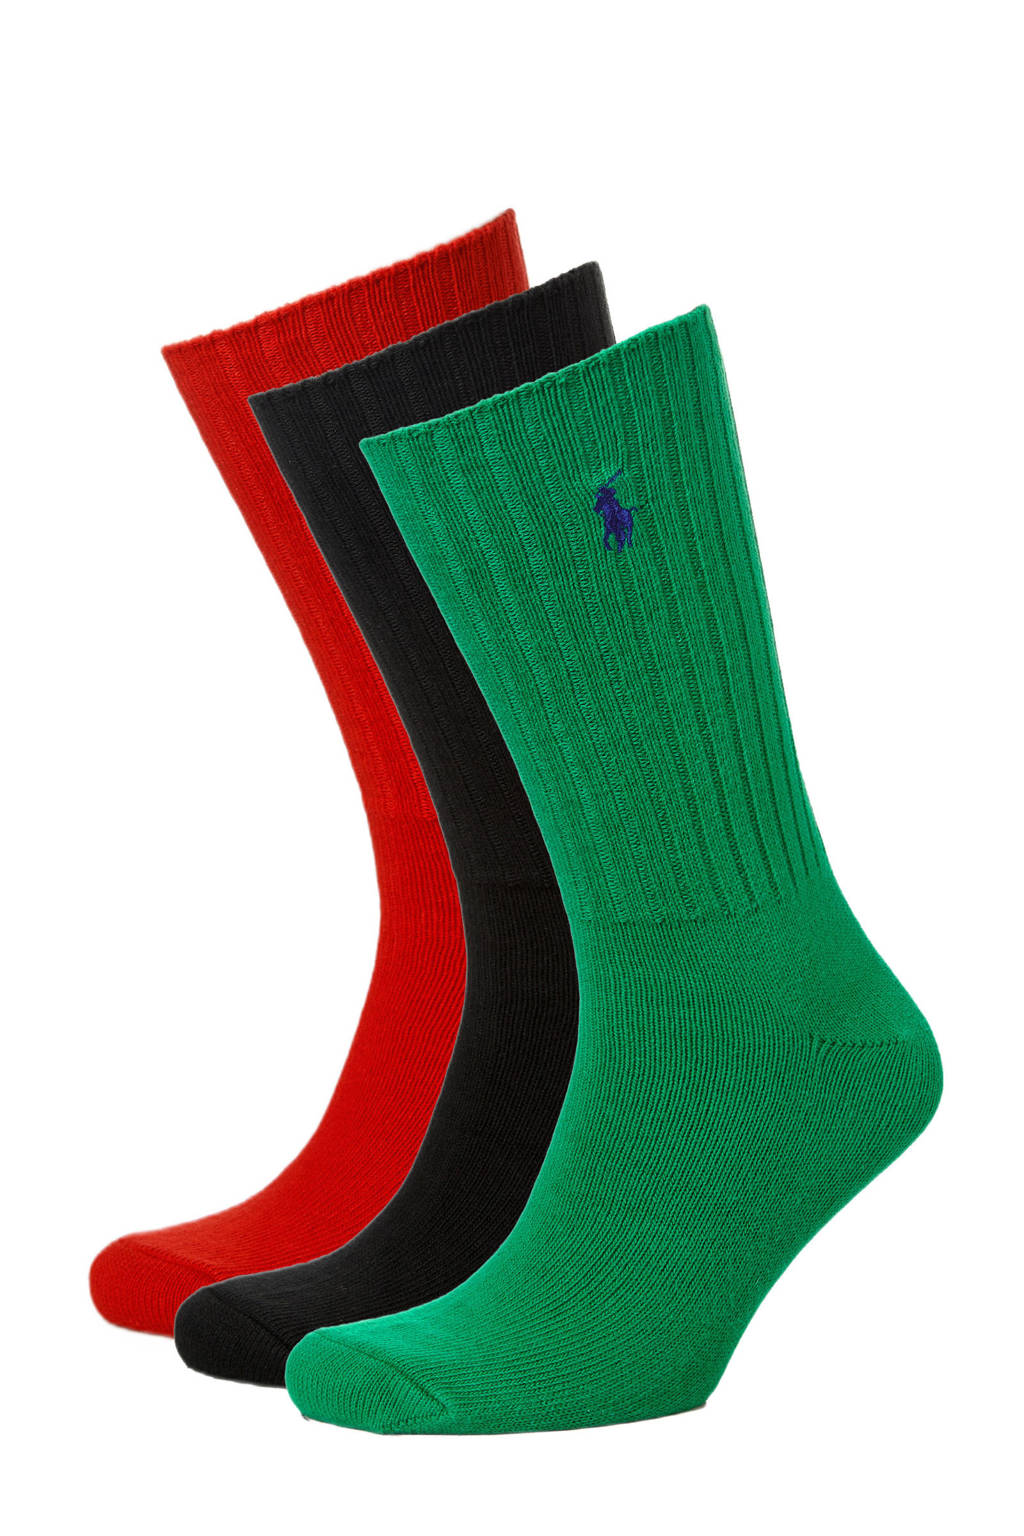 Ralph Lauren sokken - set van 3 rood/groen/zwart, Rood/Groen/Zwart